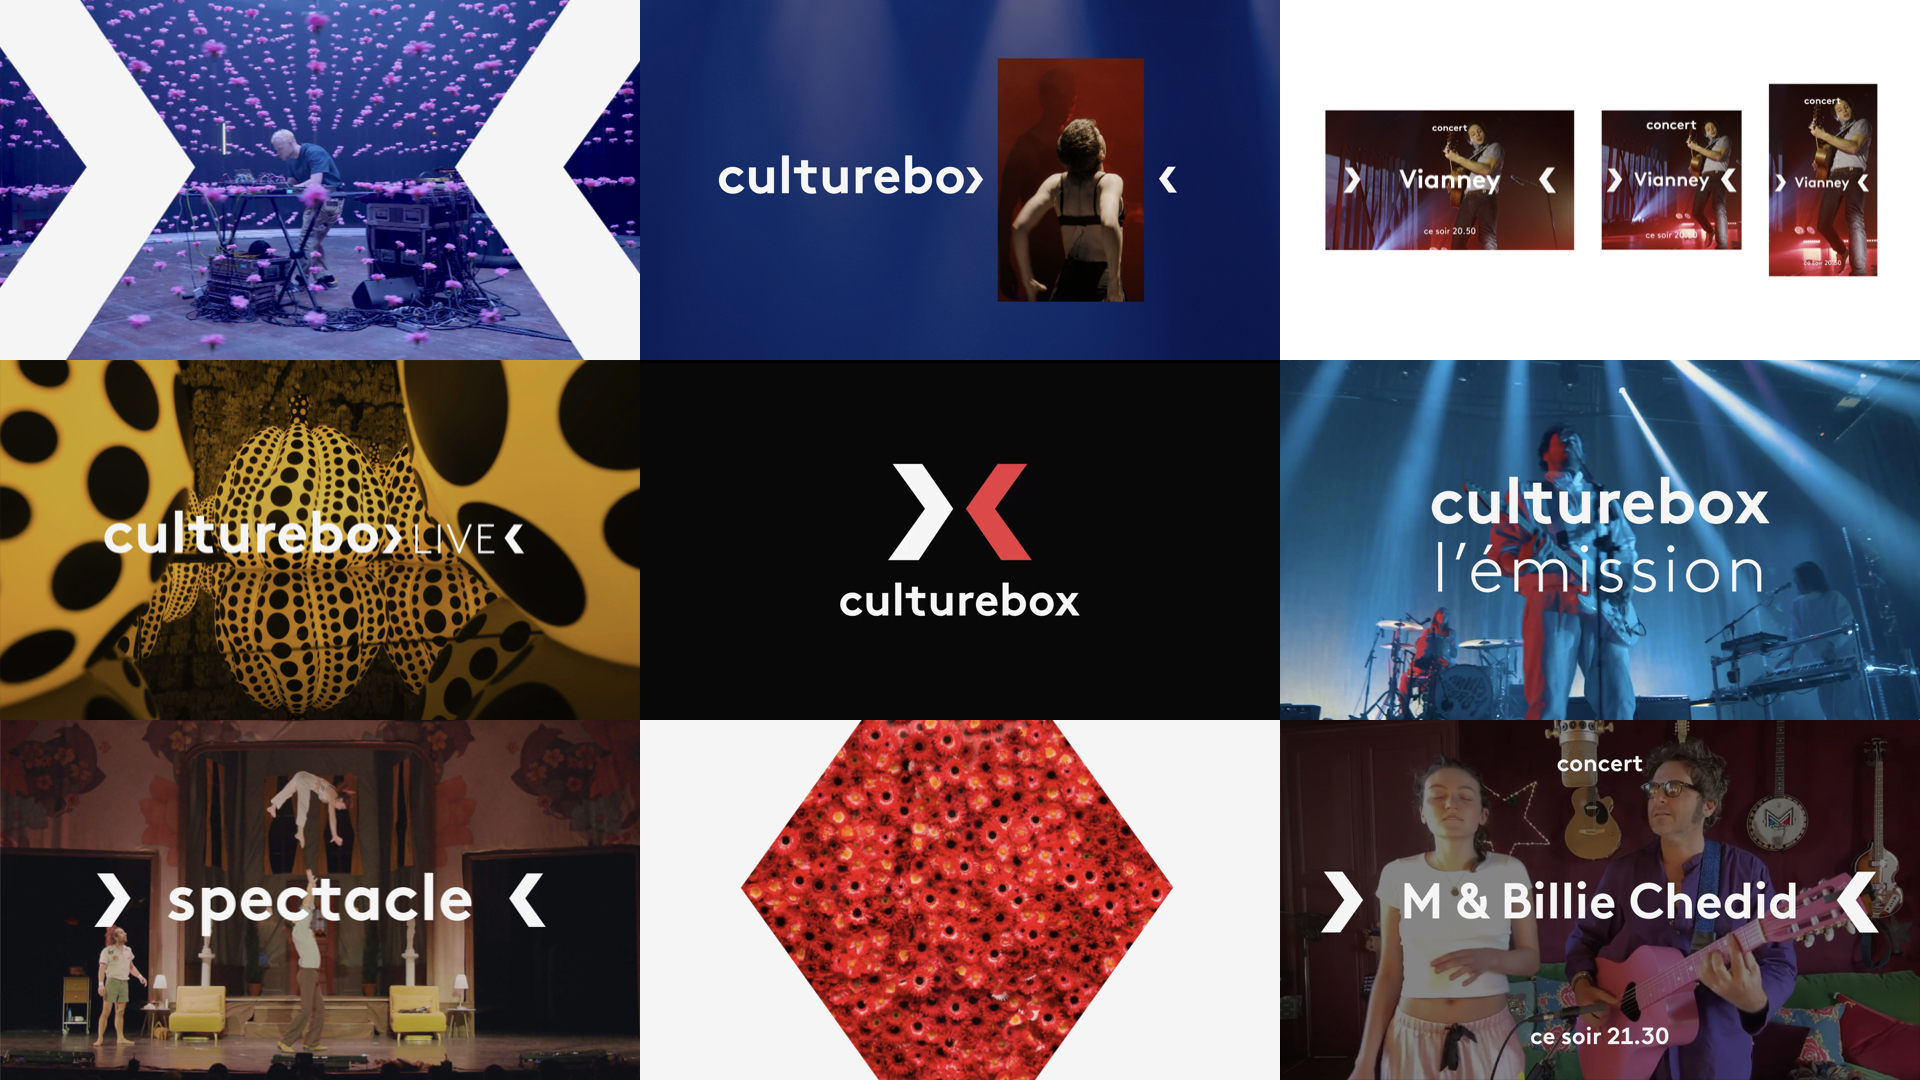 culturebox